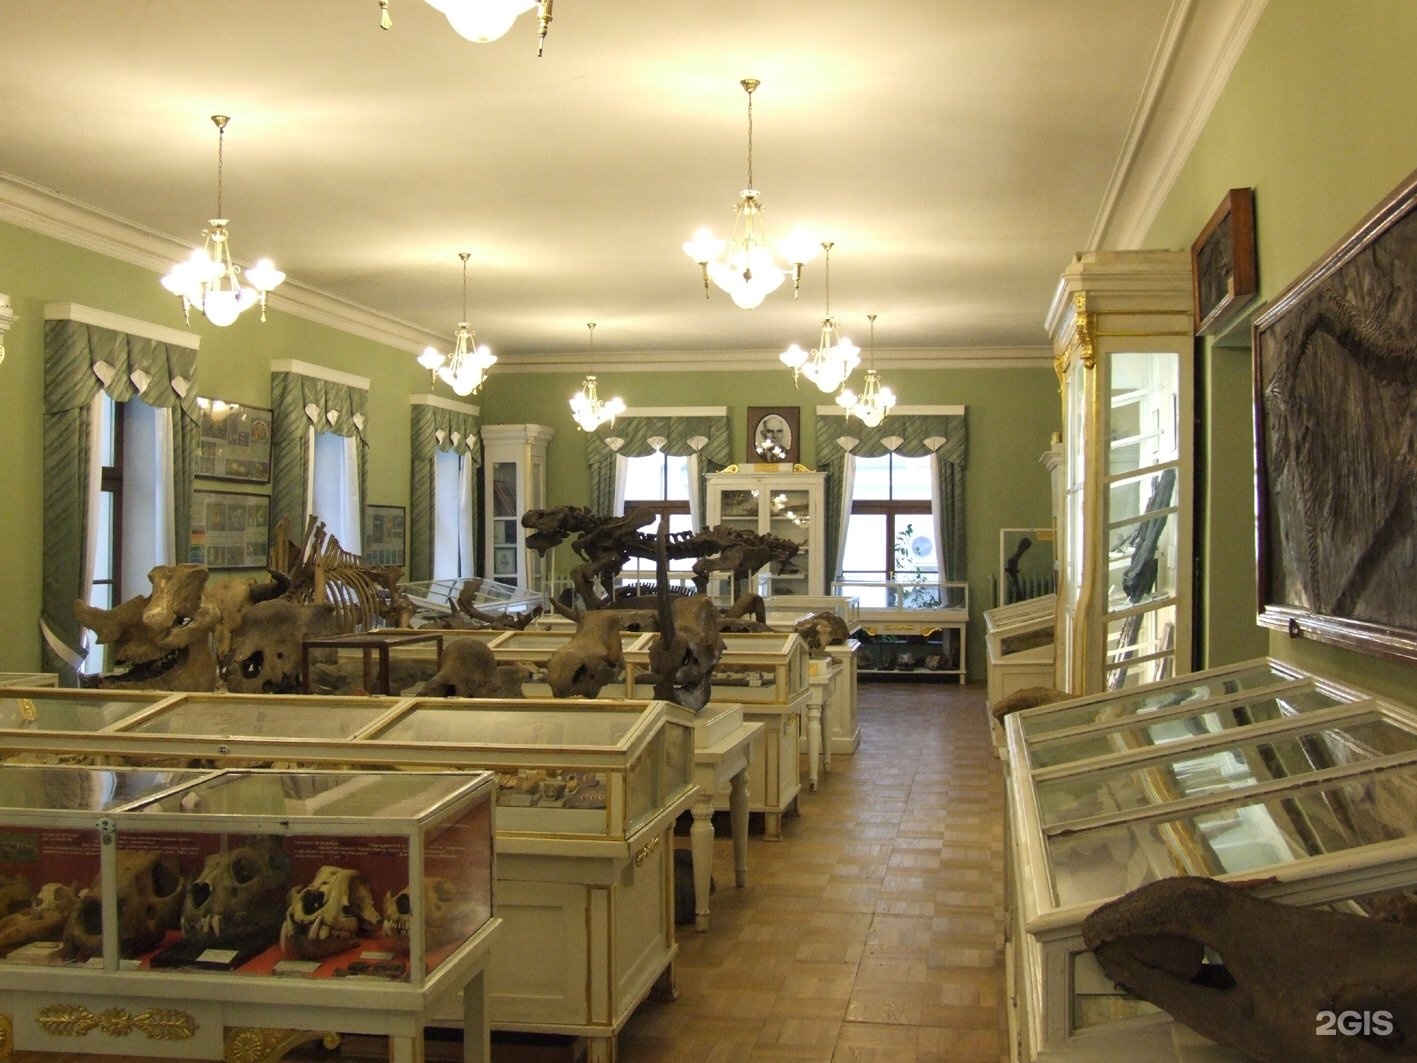 Музей в горном институте в санкт петербурге